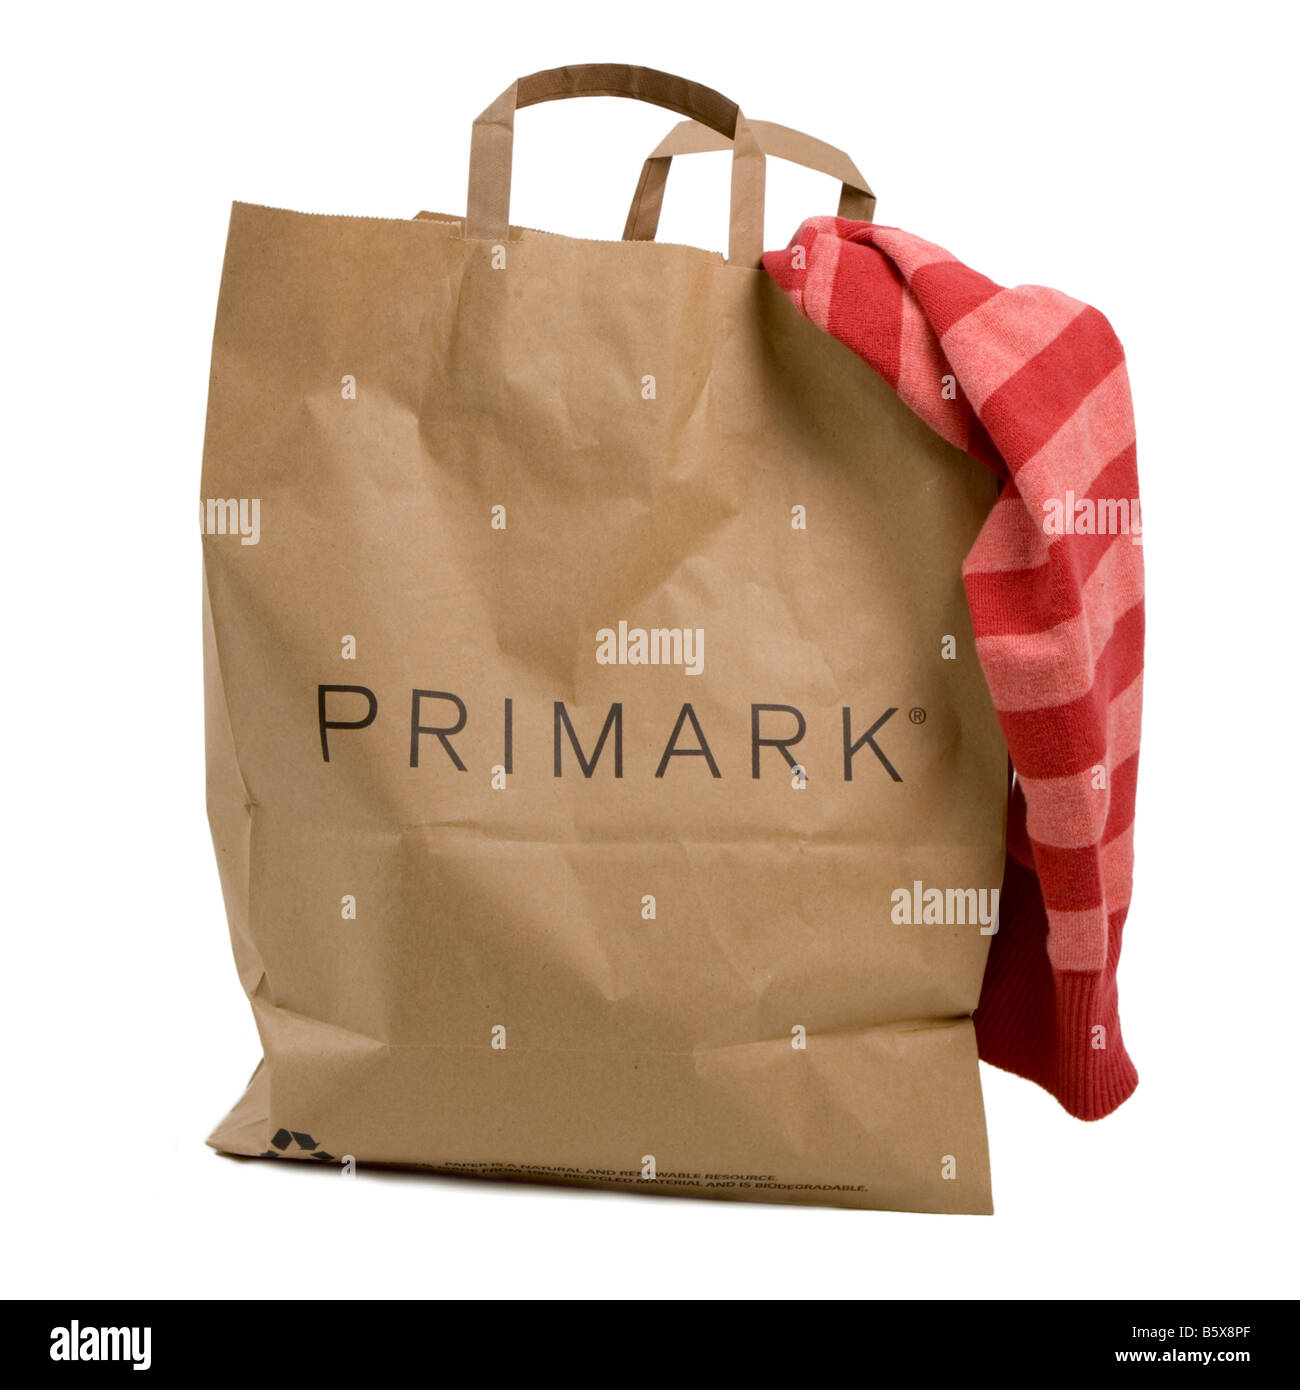 La mejor compra de @Primark ❤️ 3 bolsas de vacio por tan solo 4